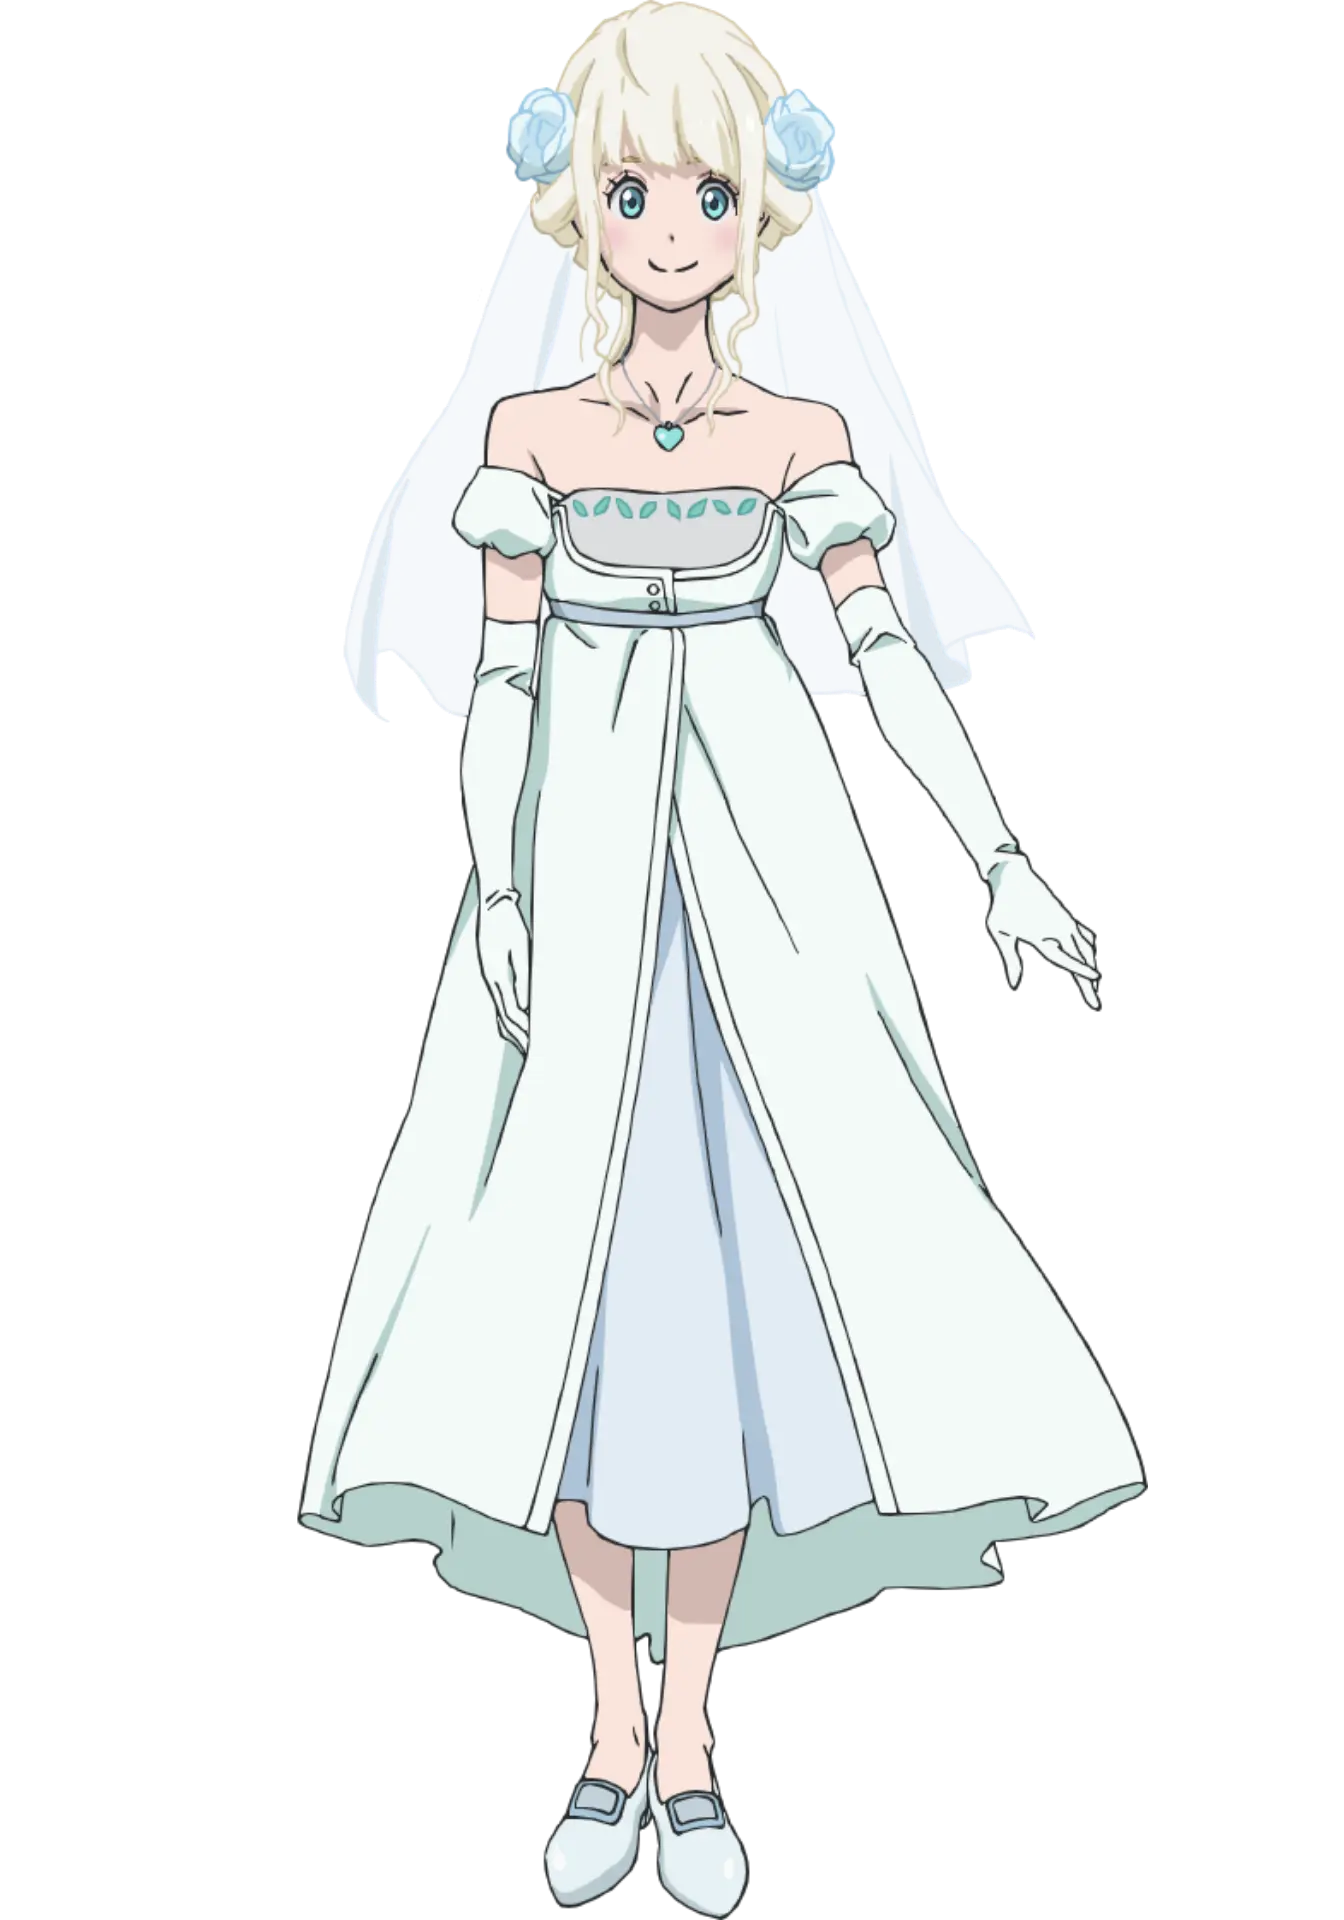 Fena: Pirate Princess / Kaizoku Ōjo - Other Anime - AN Forums